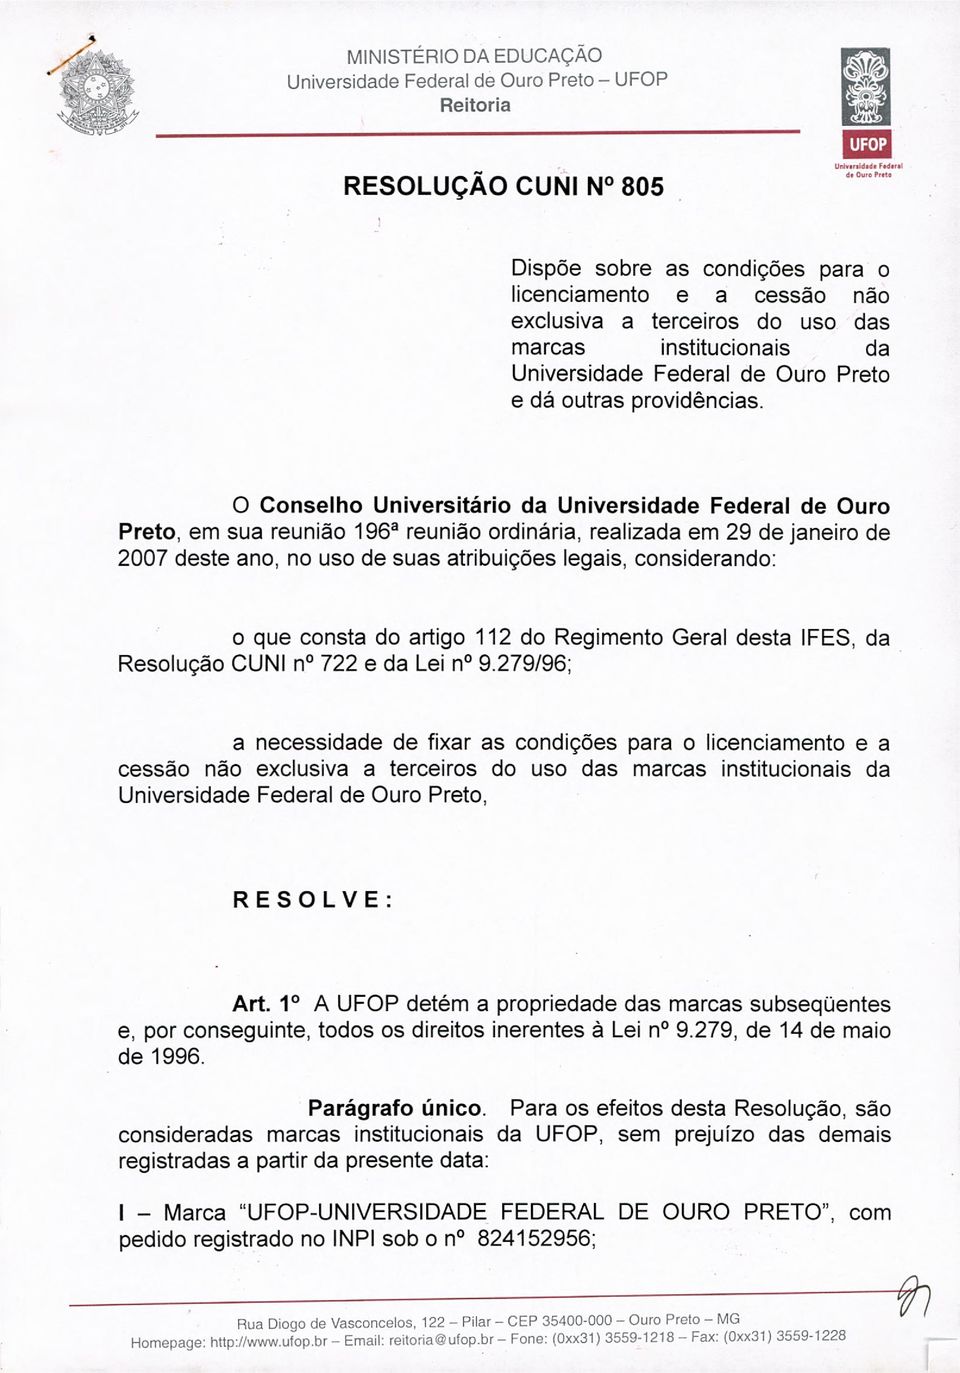 O Conselho Universitário da Universidade Federal de Ouro Preto, em sua reunião 196a reunião ordinária, realizada em 29 de janeiro de 2007 deste ano, no uso de suas atribuições legais, considerando: o